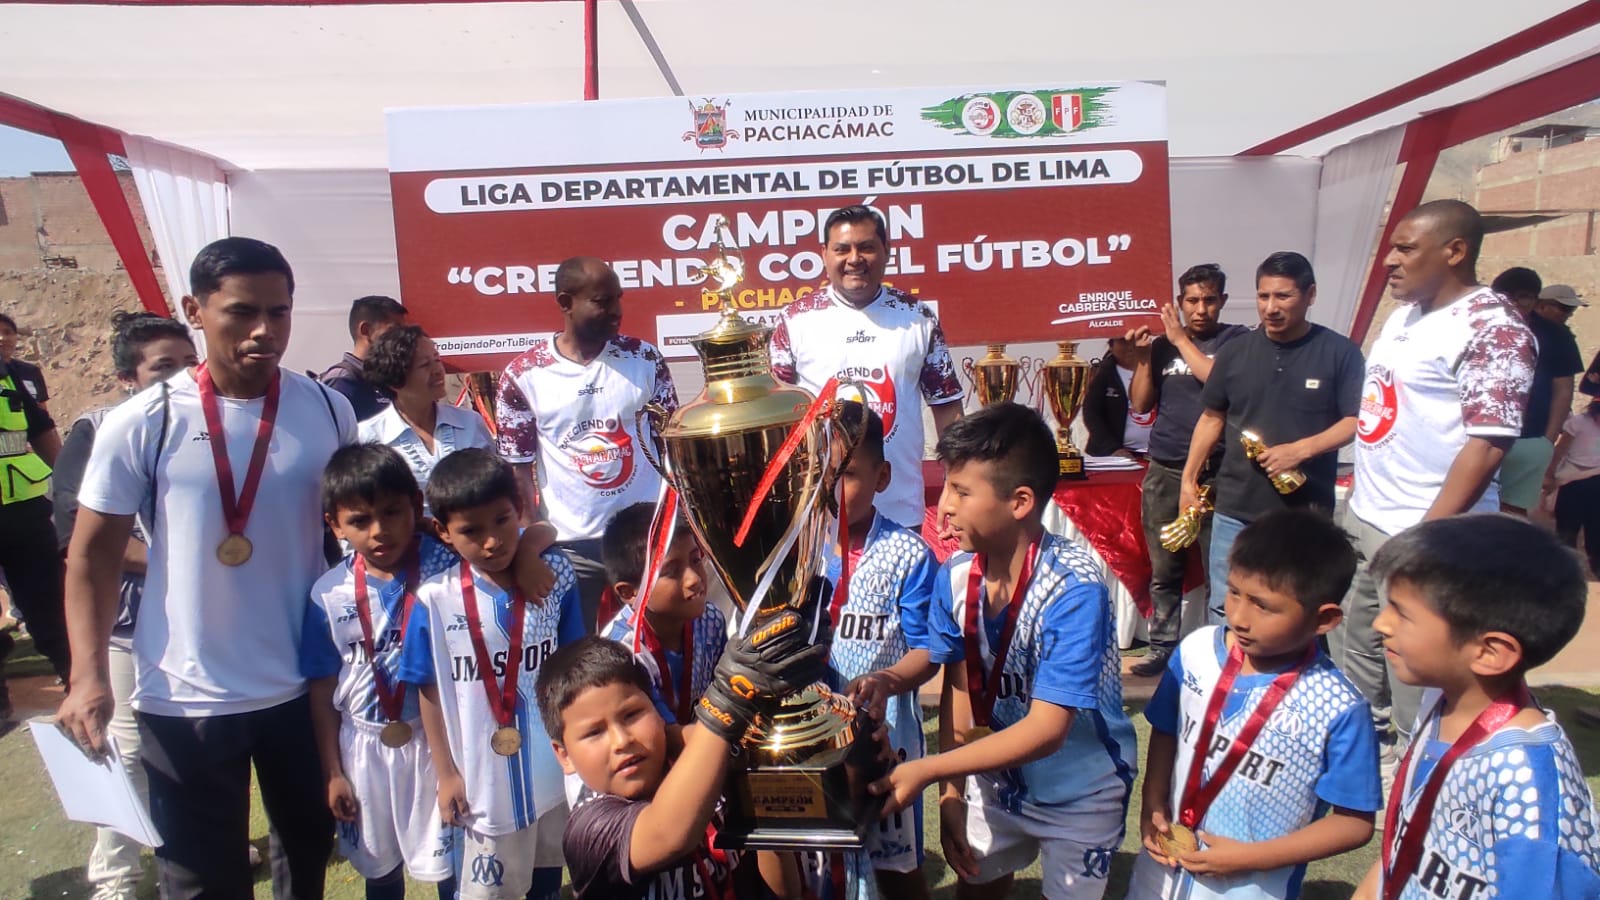 Creciendo con el fútbol llega a su fin en Pachacámac